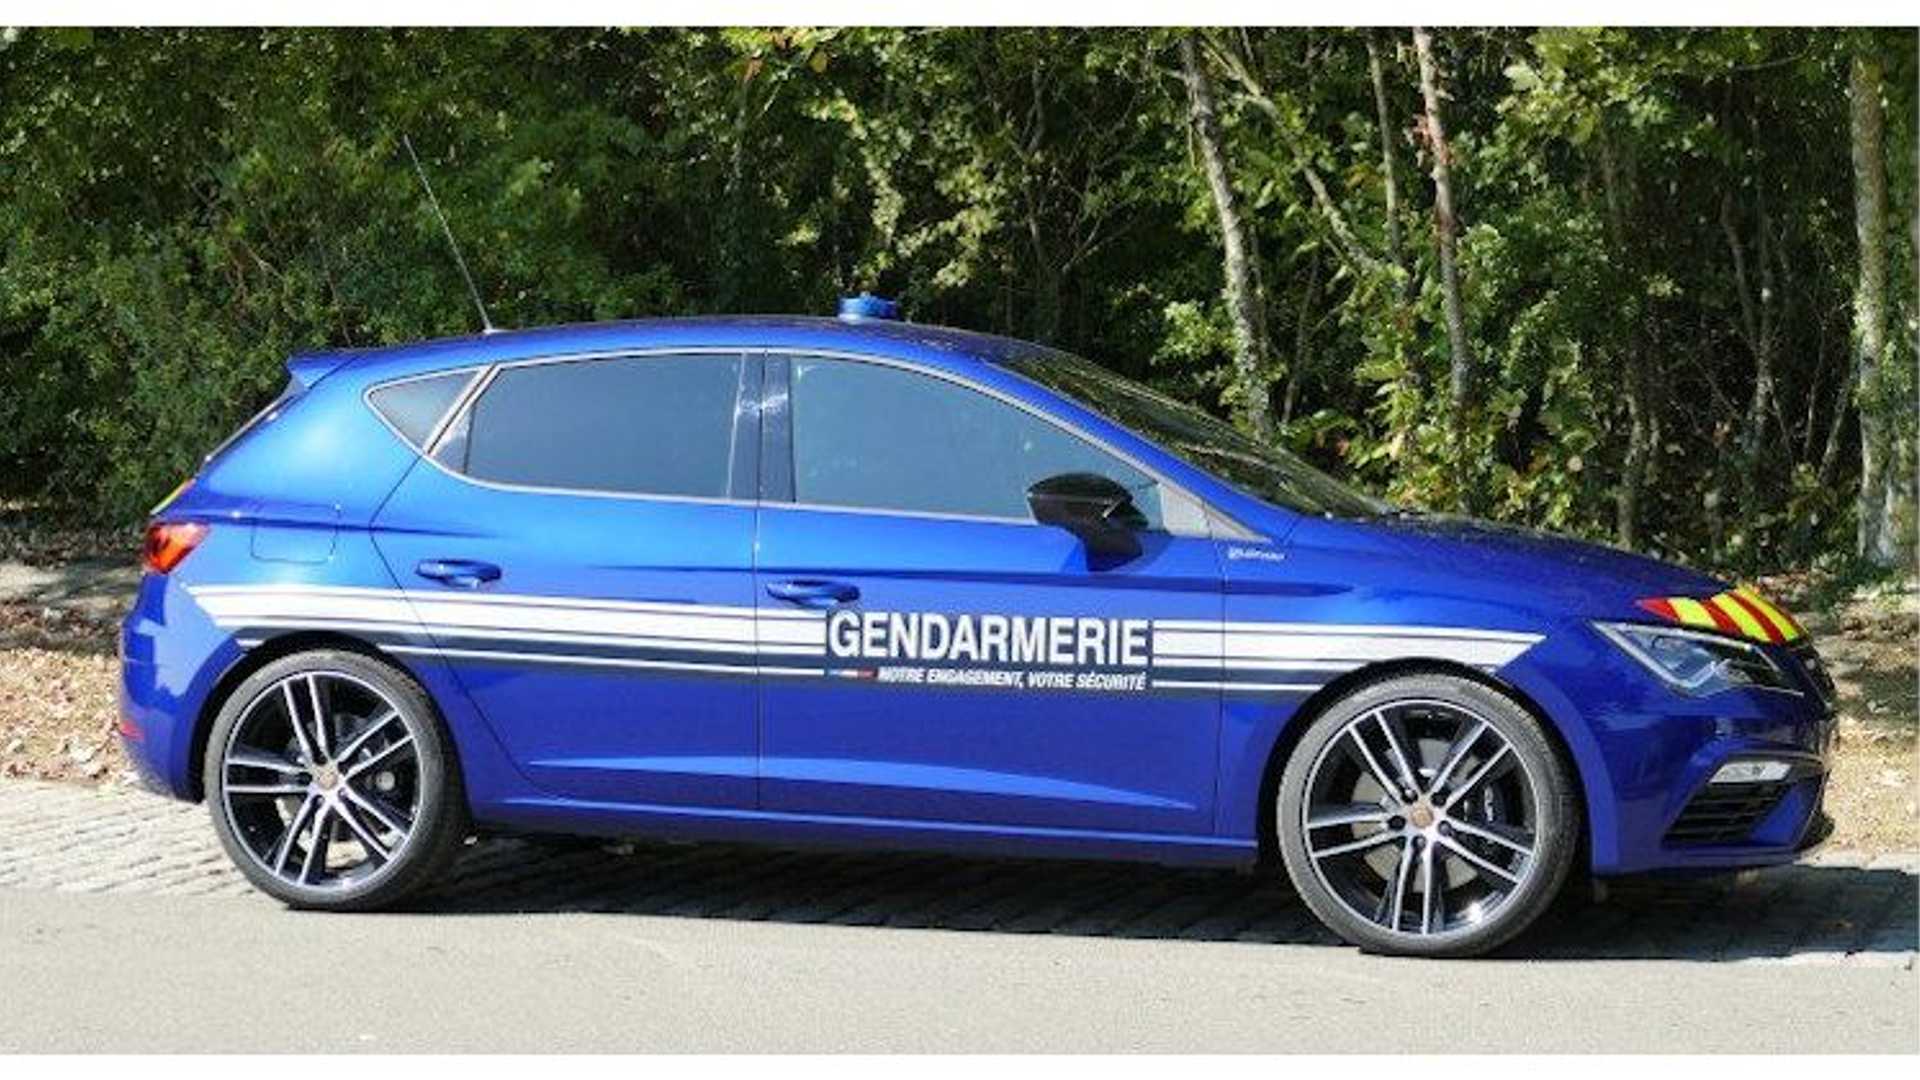 La policía francesa dice adiós al Renault Mégane RS: Lo sustituyen con el SEAT León CUPRA